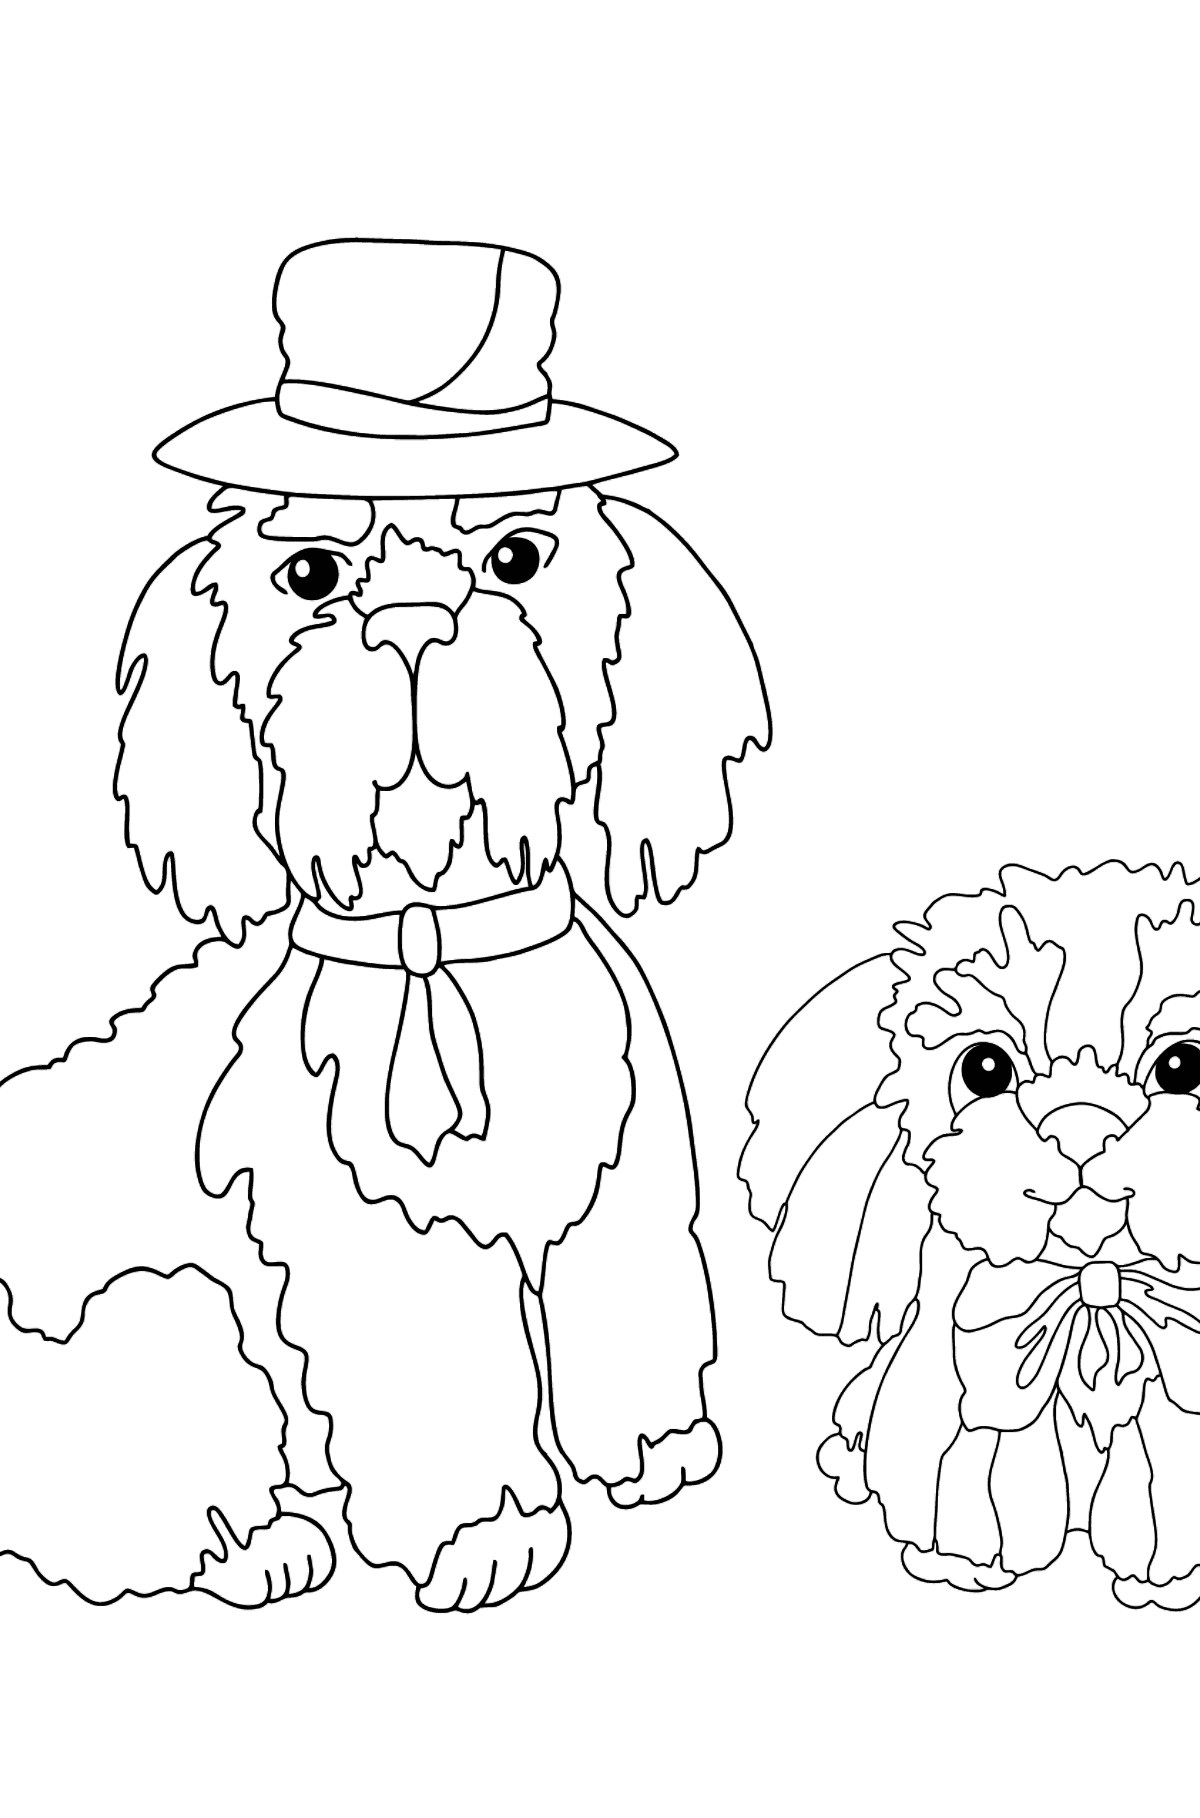 Раскраска Прелестные Собаки - Картинки для Детей